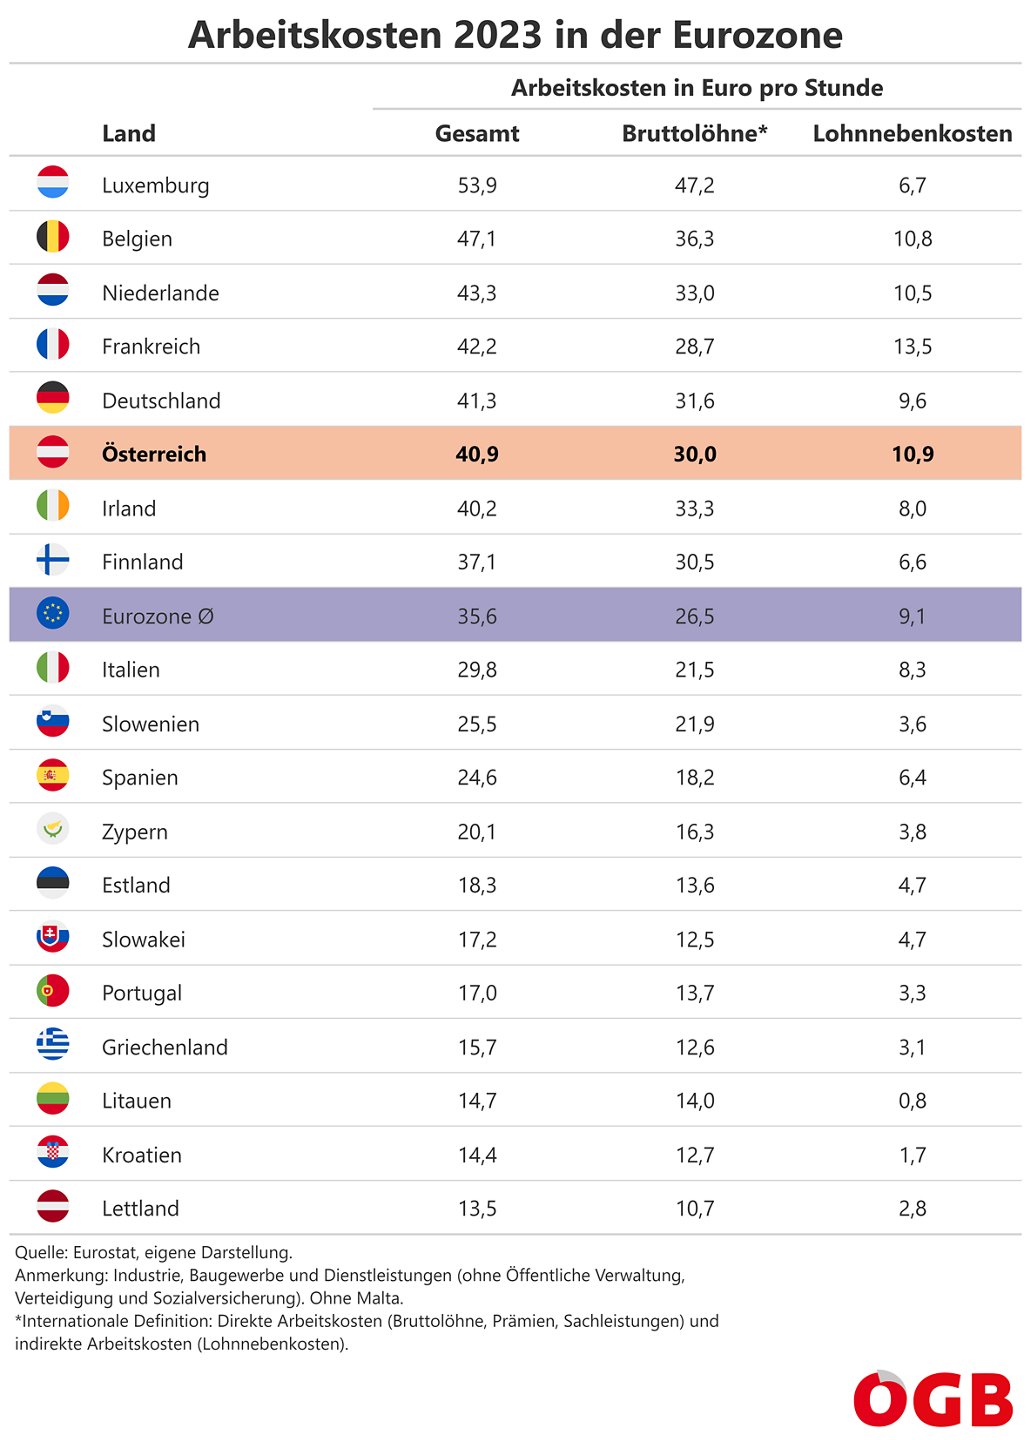 Die Tabelle zeigt die Arbeitskosten (aufgeteilt in Bruttolöhne und Lohnnebenkosten) pro Stunde 2023 in Österreich und den Ländern der Eurozone.